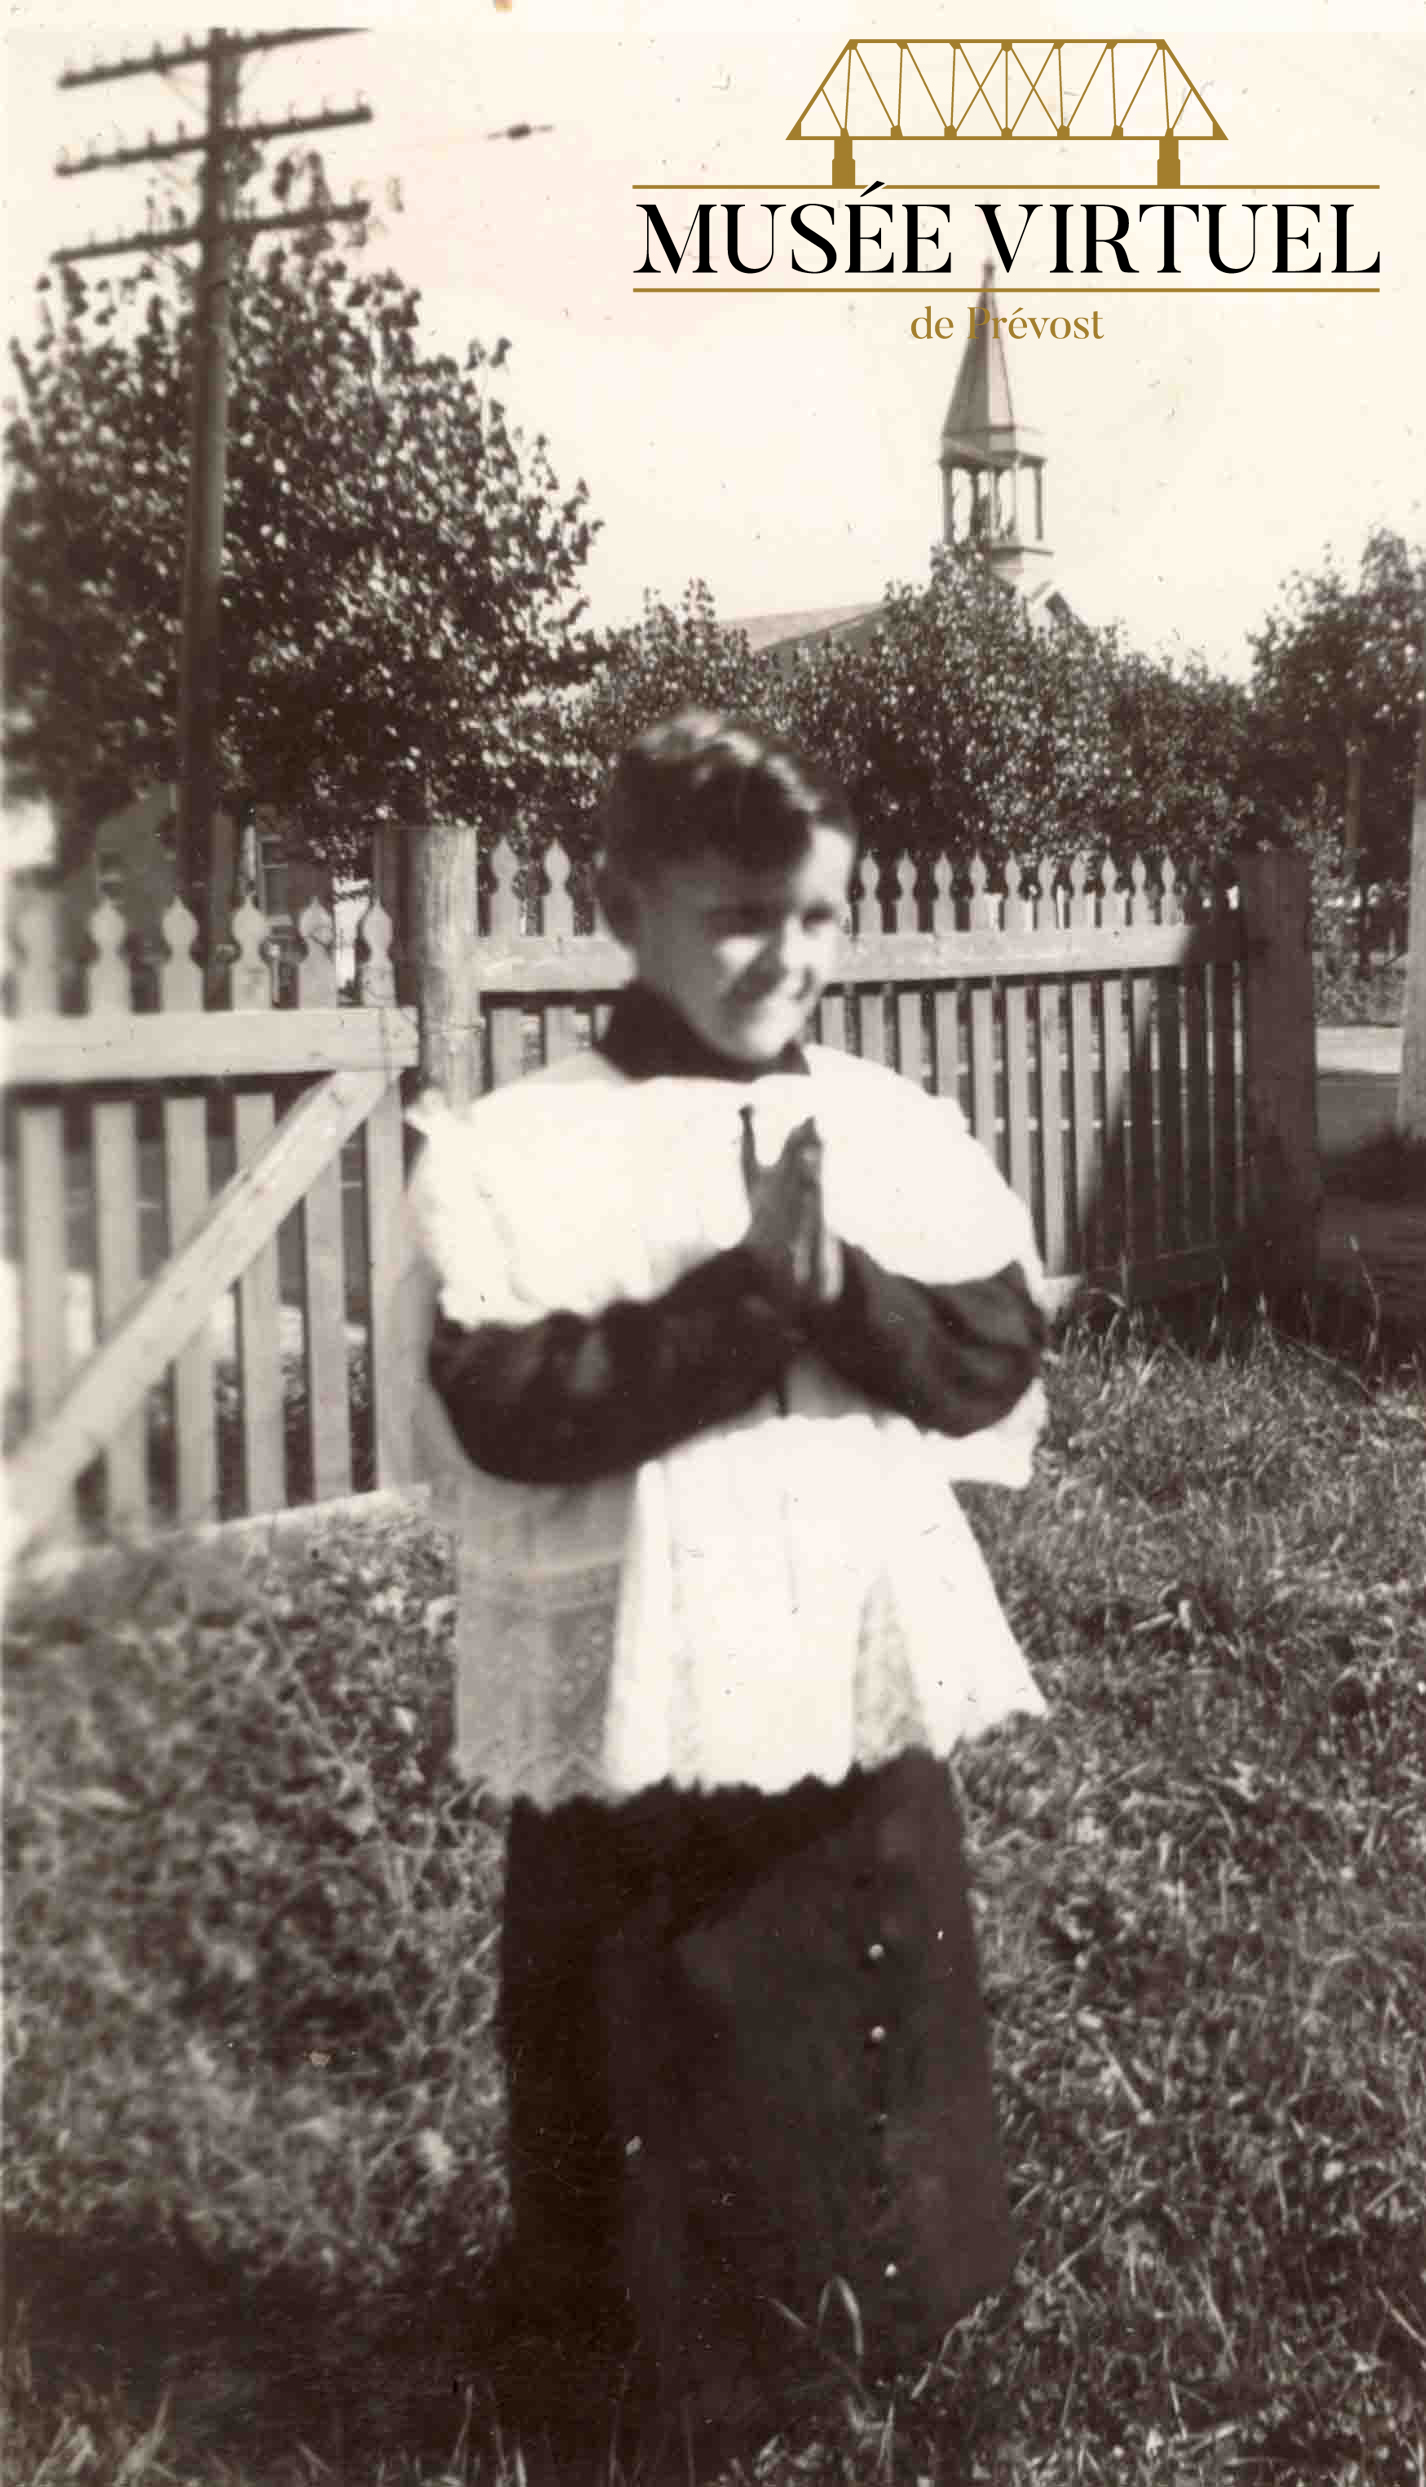 9. Eugène Brossea à 7 ans, servant de messe, en 1940. On voit le clocher de l'Église Saint-François-Xavier en arrière-plan - Collection de la famille Brosseau